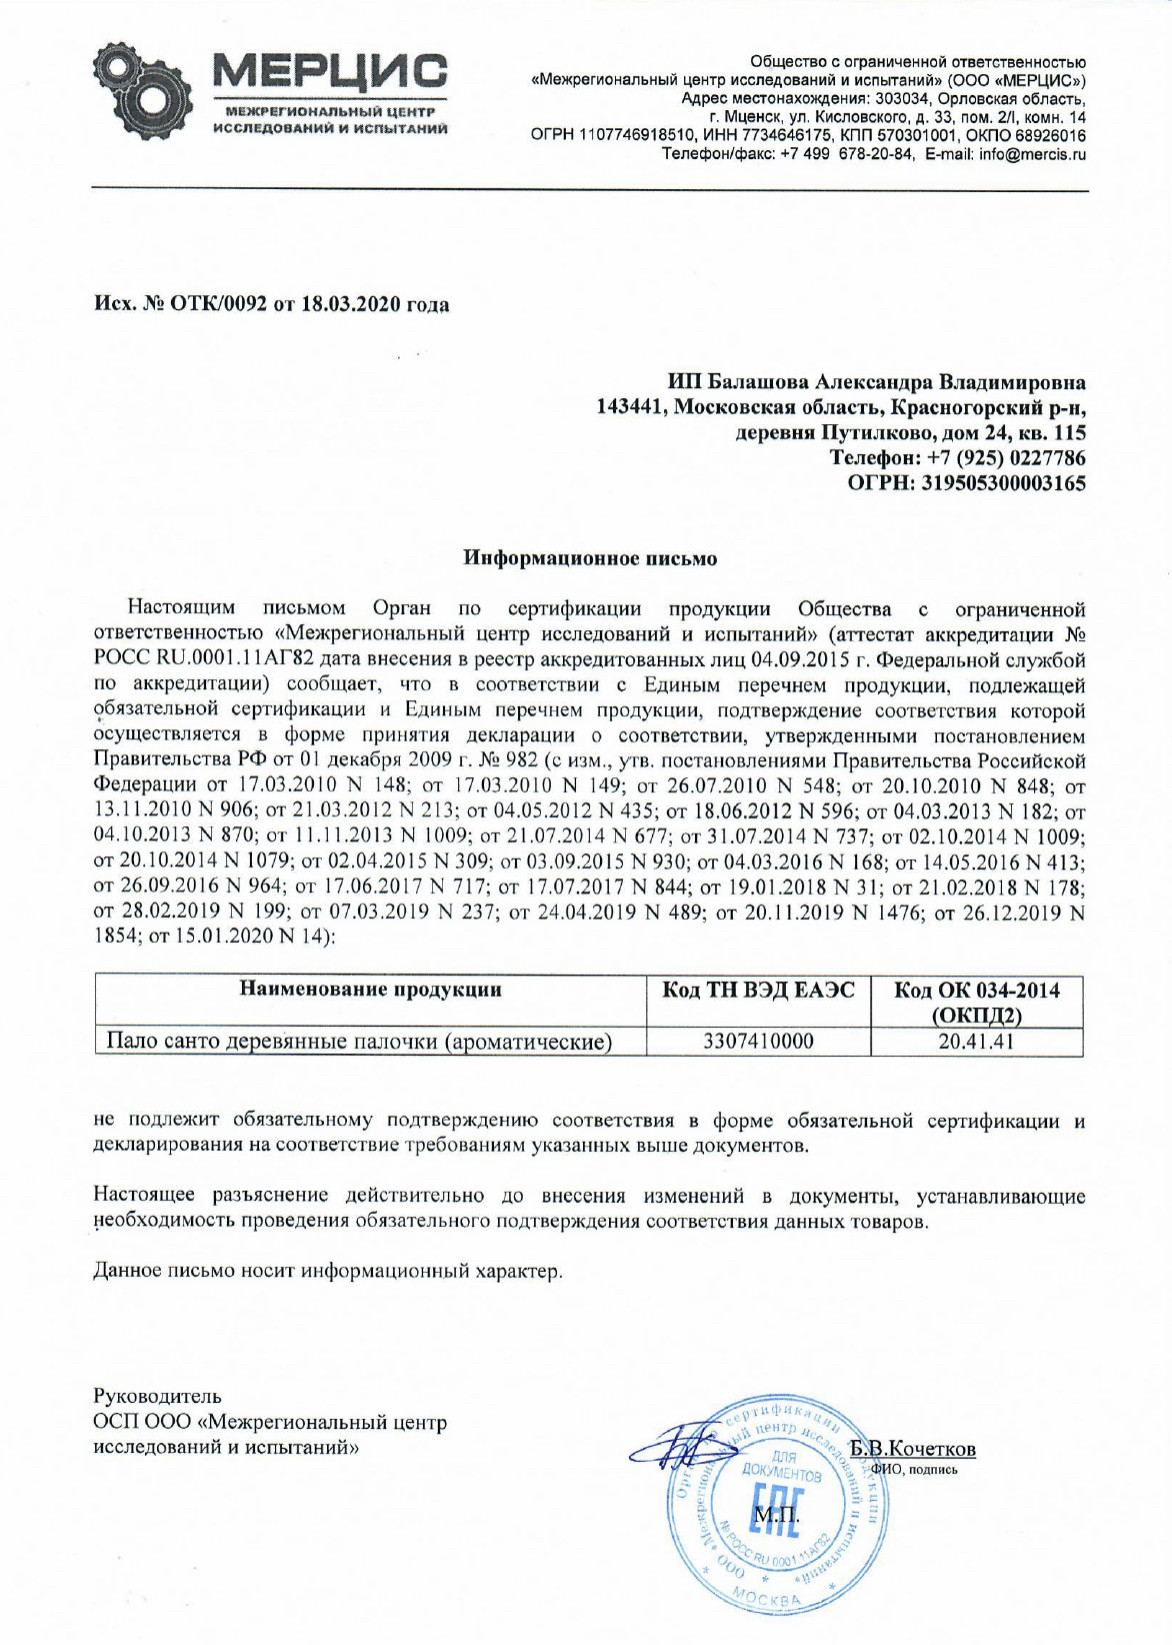 Отказной письмо на продажу пало санто в России